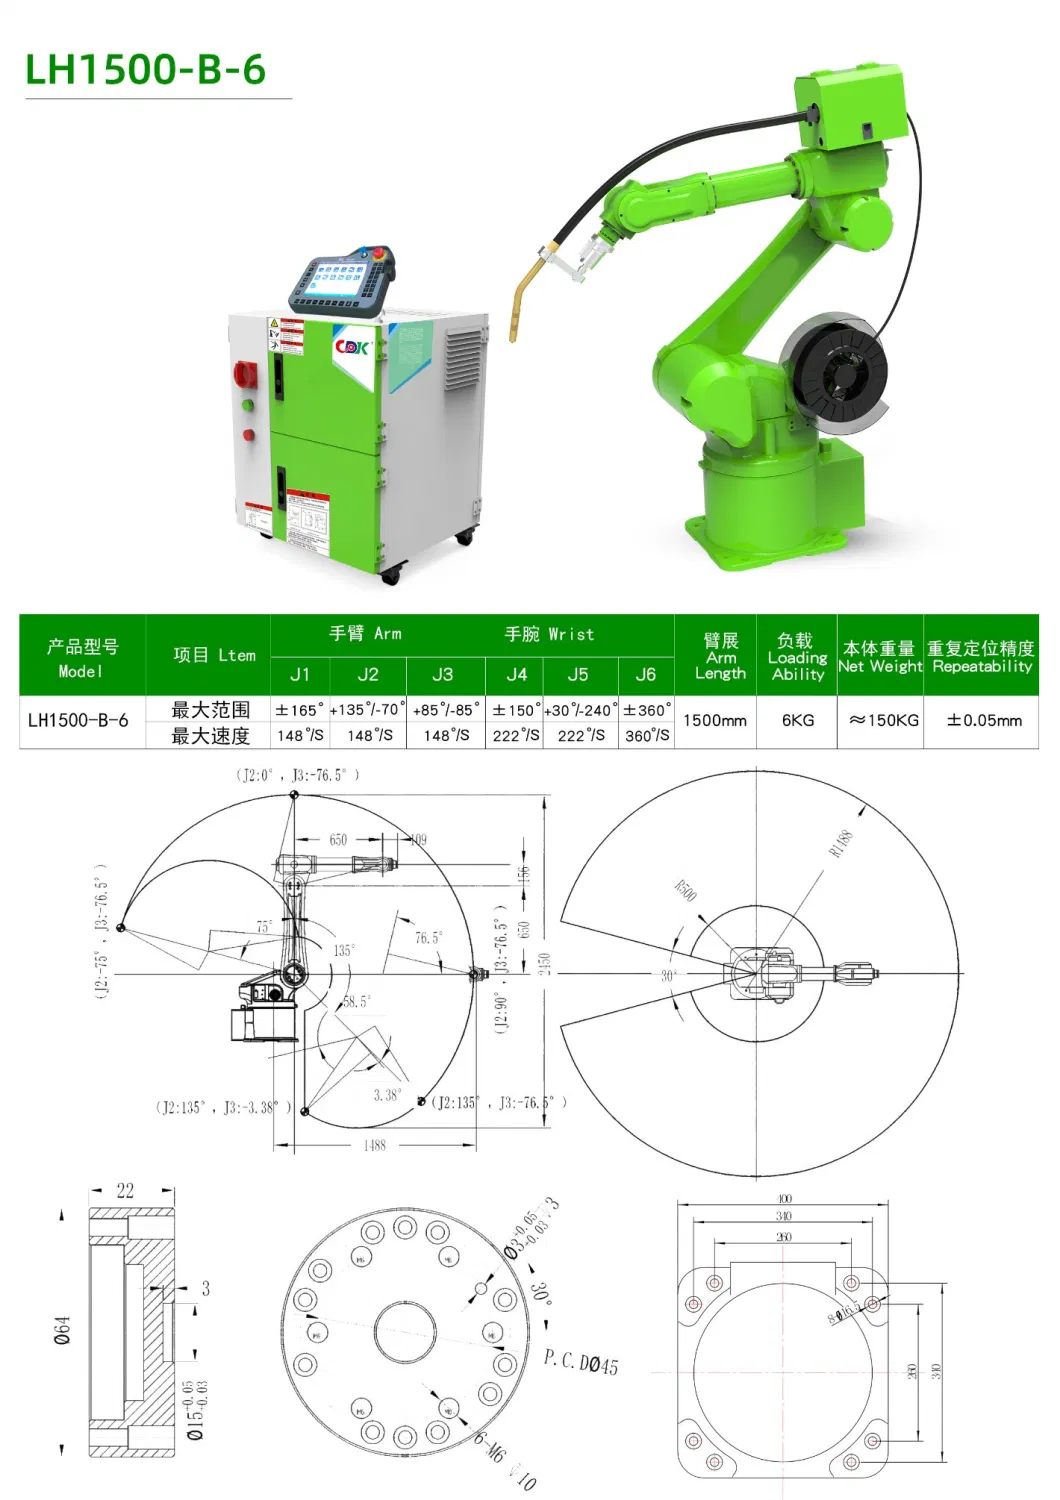 Hot Sale Lh1500-B-6 Welding Robot Arm 6 Axis Reach Manipulator